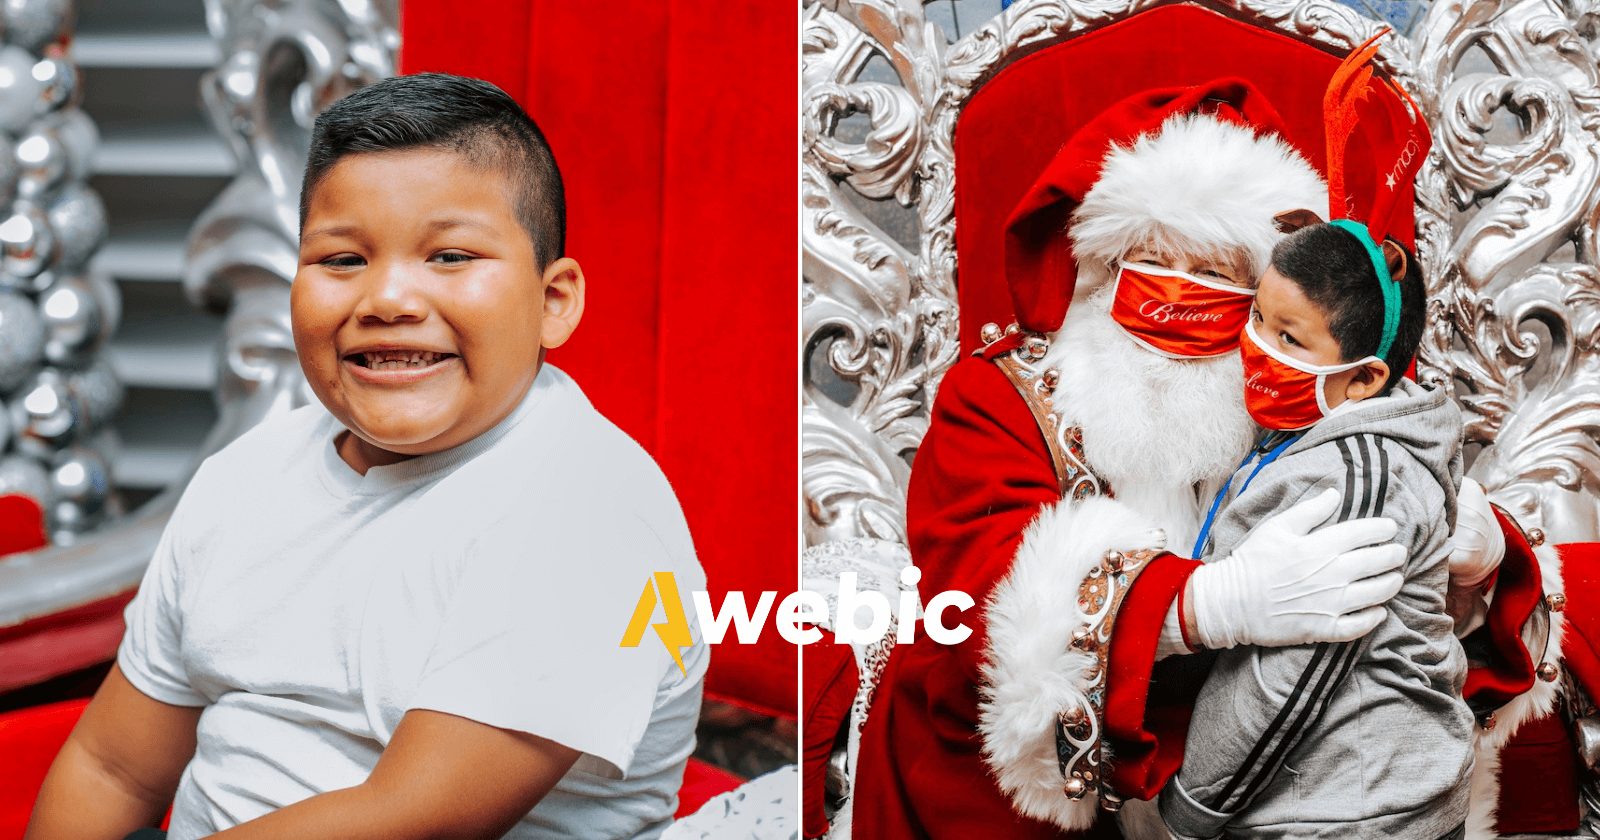 Menino com câncer ganha dia inesquecível com Papai Noel no 'Polo Norte'